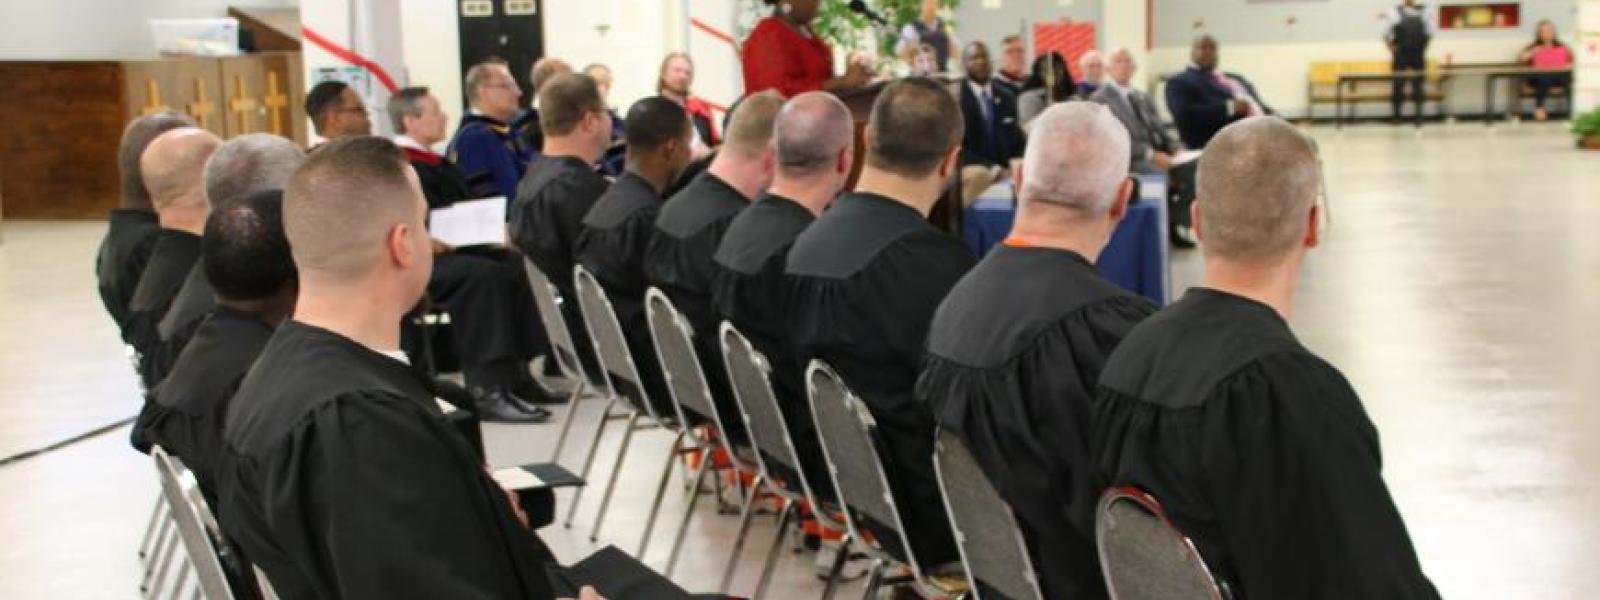 CIU Prison Initiative graduation 2018